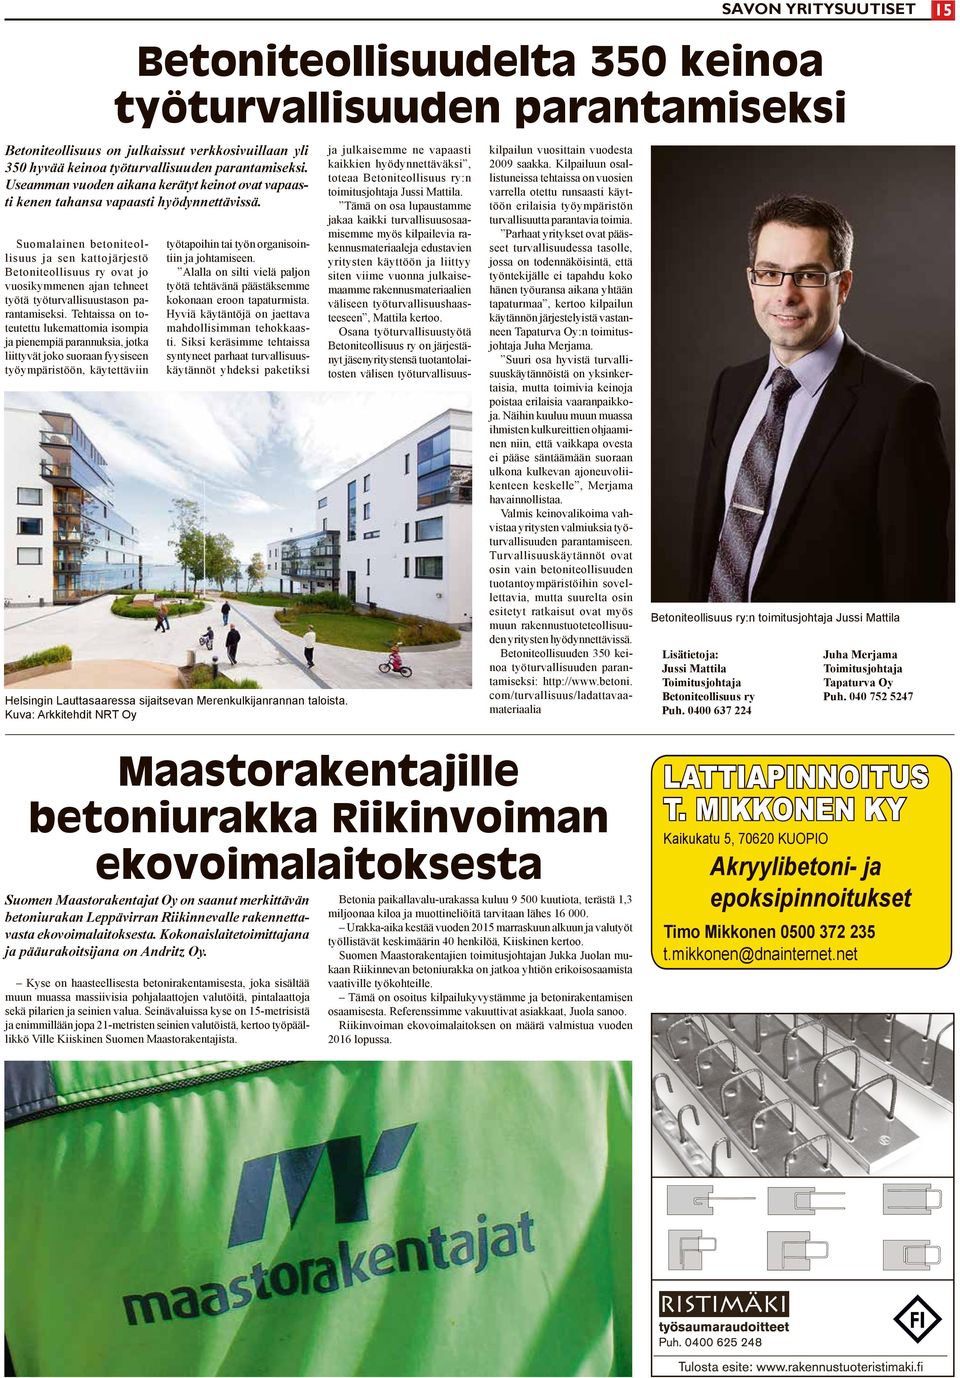 Suomalainen betoniteollisuus ja sen kattojärjestö Betoniteollisuus ry ovat jo vuosikymmenen ajan tehneet työtä työturvallisuustason parantamiseksi.